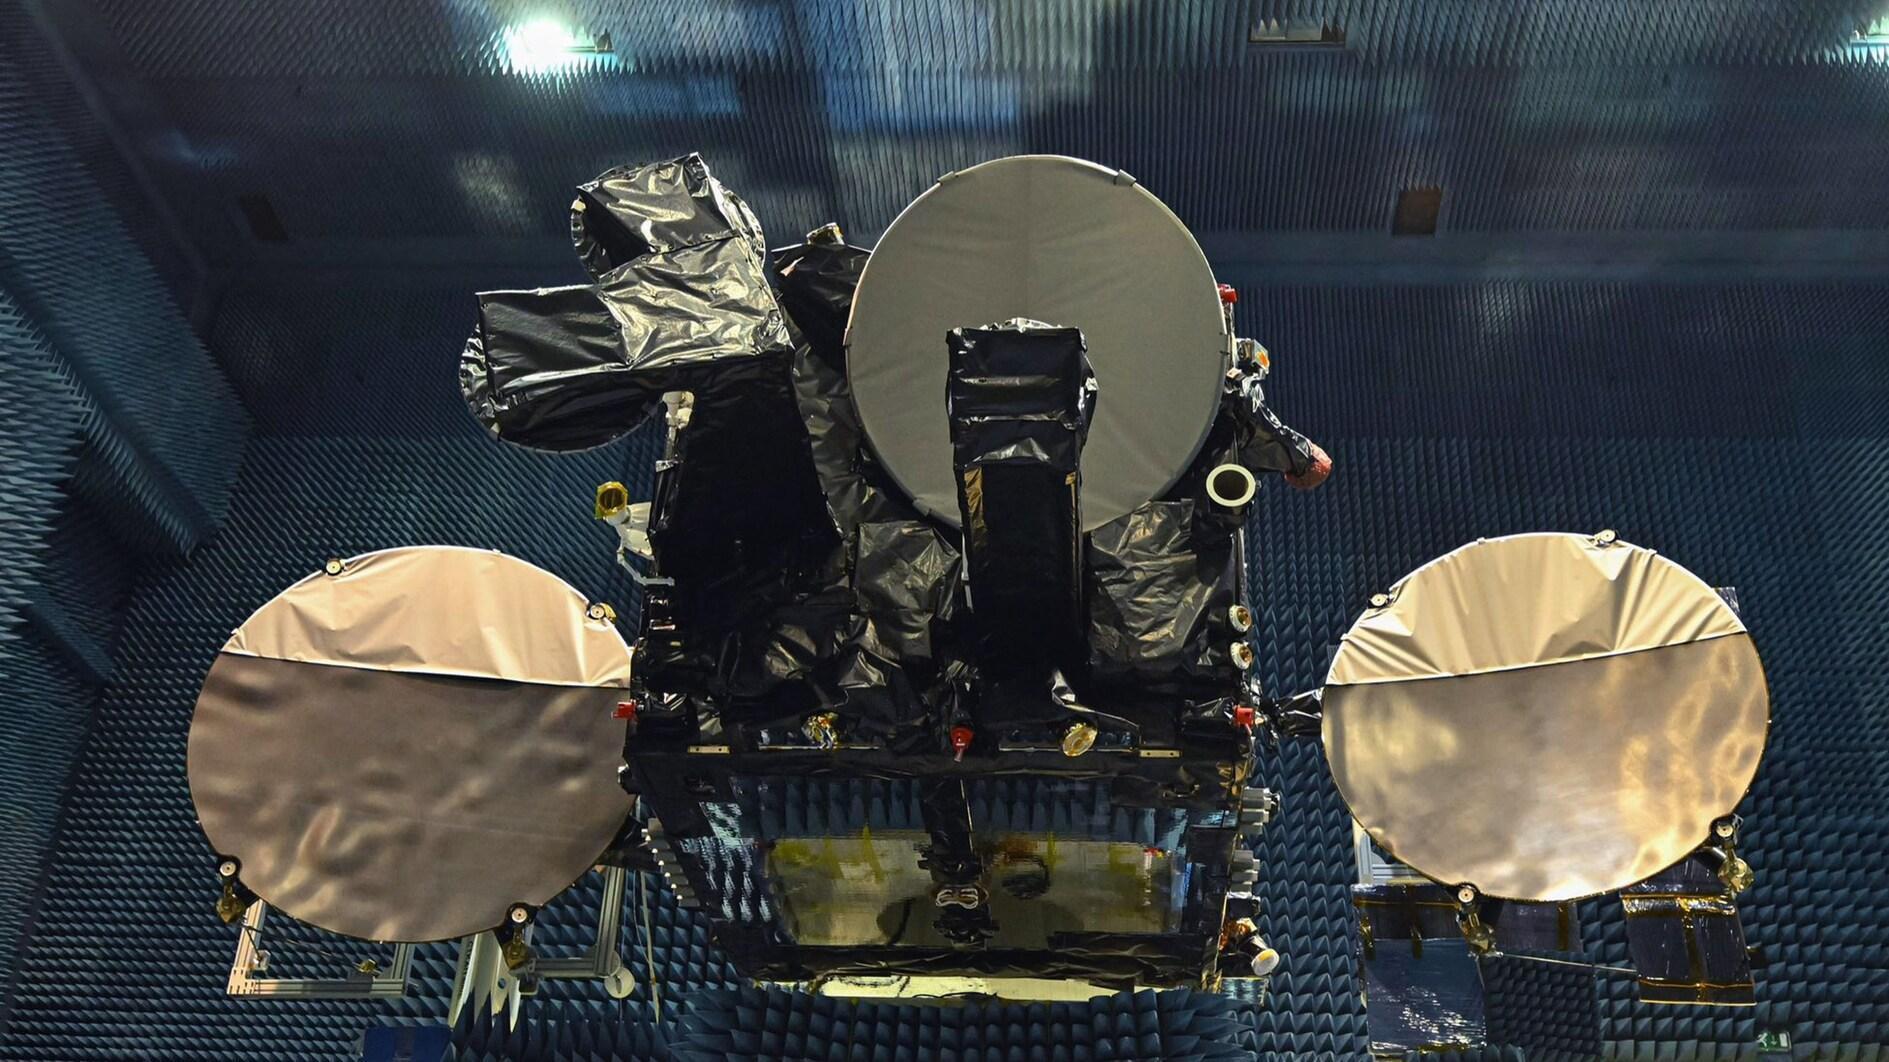 Türkiye stuurt de eerste inheemse satelliet naar de VS voor lancering